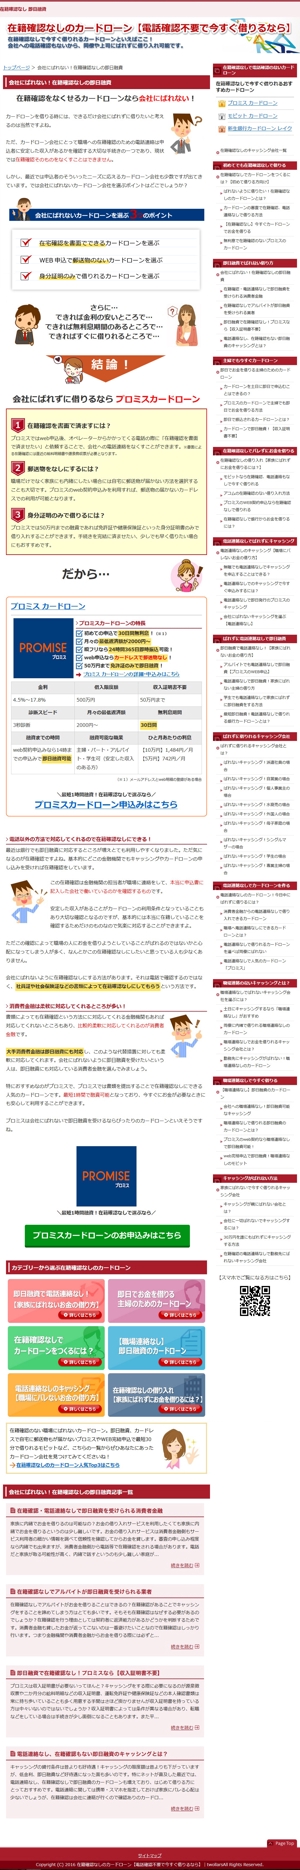 宮本一高 (miyamoto_kazutaka)さんの【ボタン及び画像作成】カードローンサイトに掲載する申込みボタン1つとその他画像2枚への提案